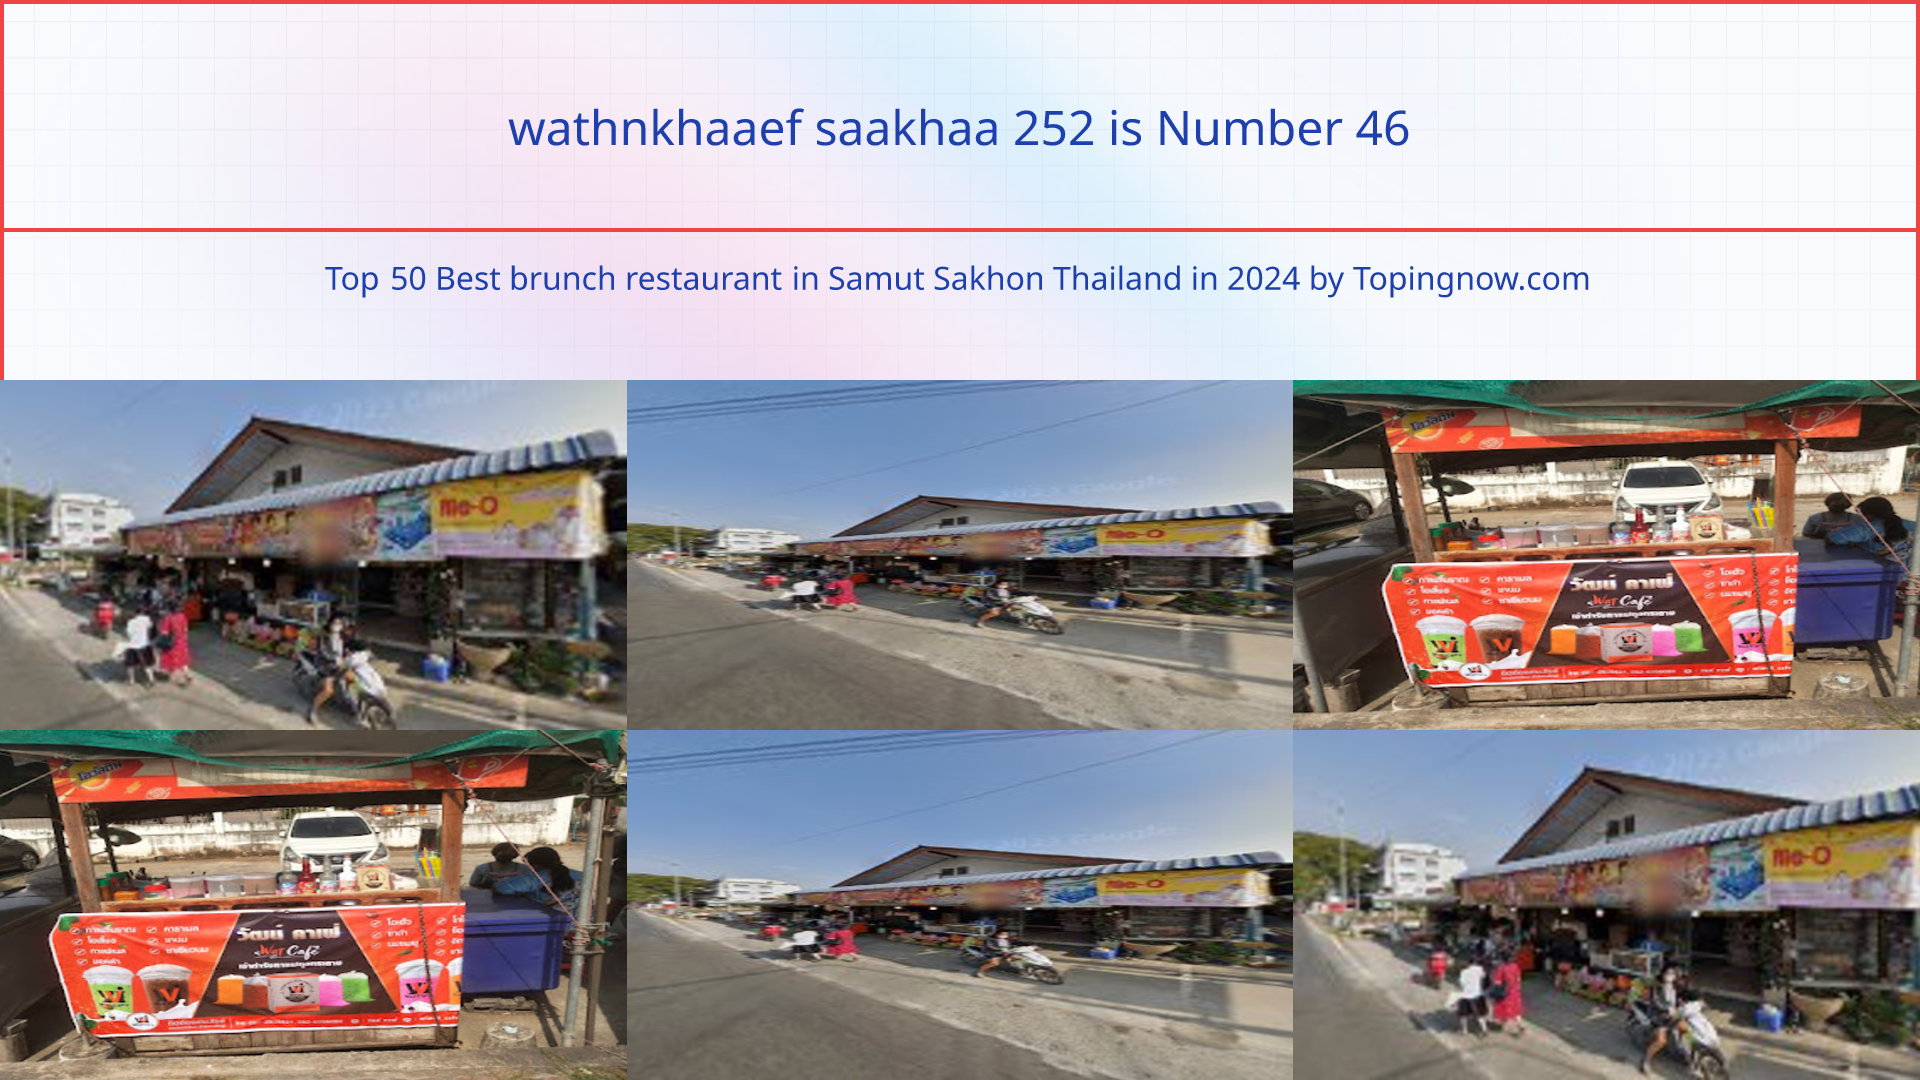 wathnkhaaef saakhaa 252: Top 50 Best brunch restaurant in Samut Sakhon Thailand in 2024